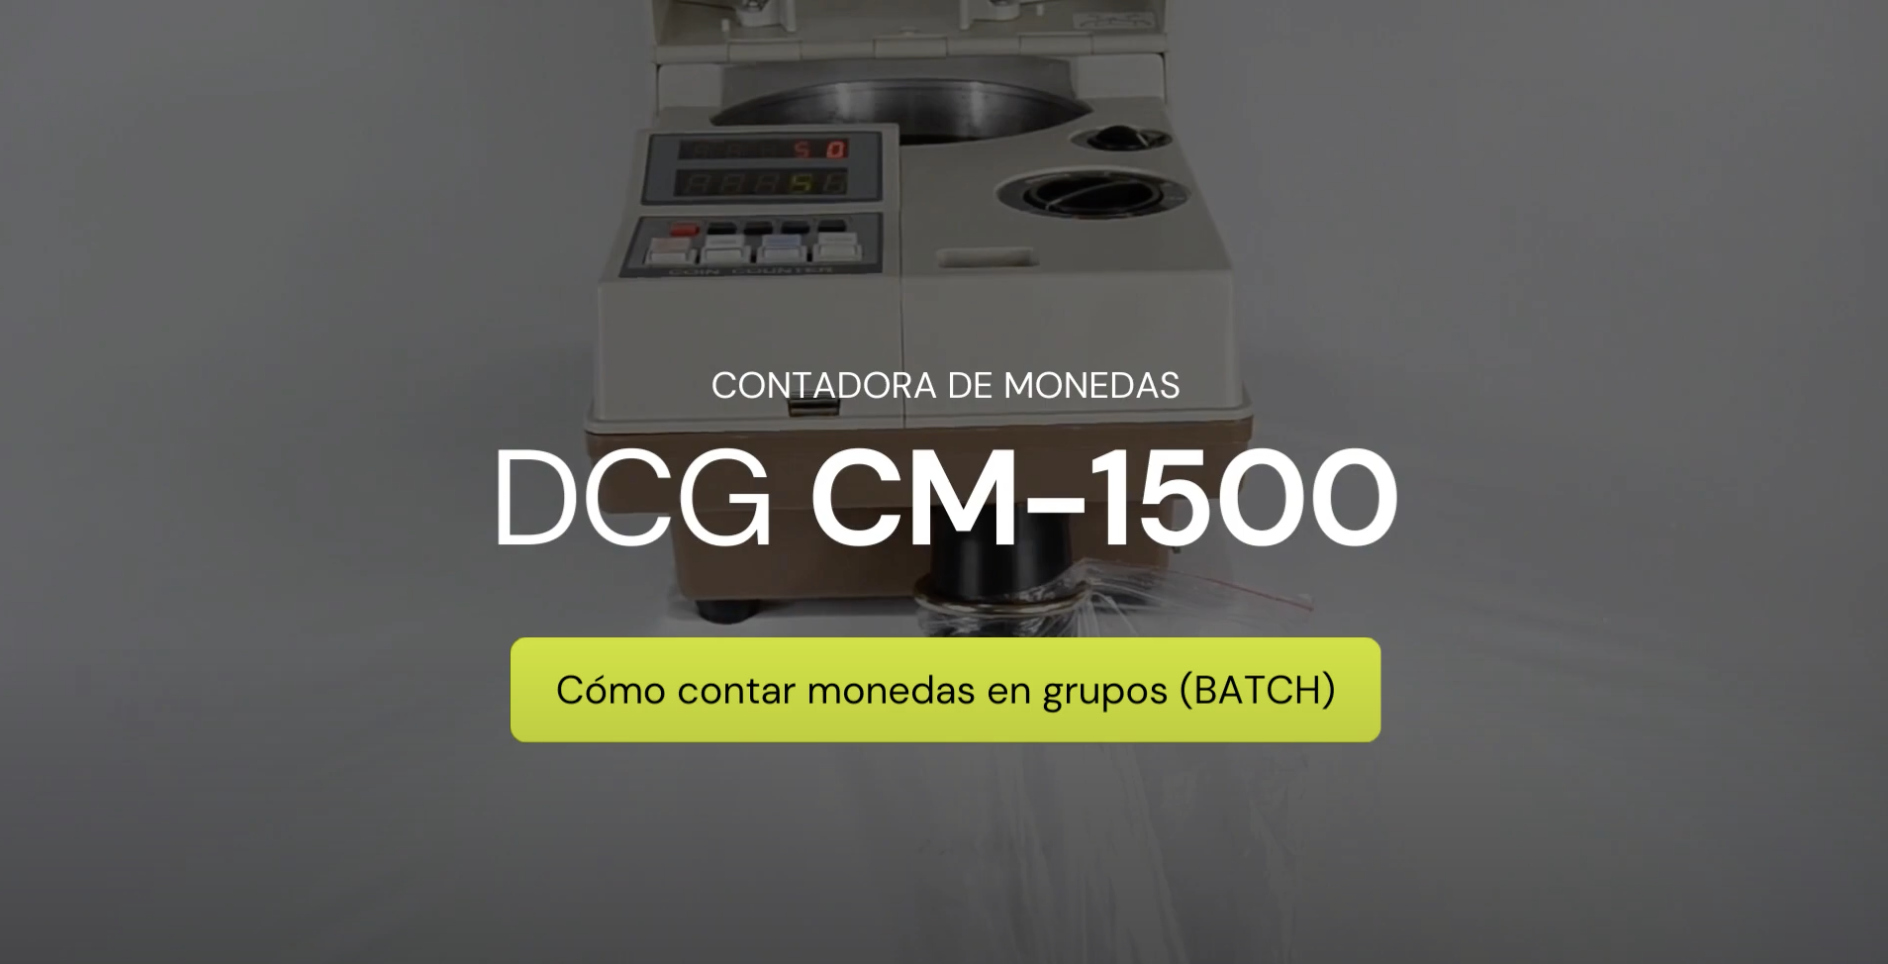 Cómo contar monedas en modo BATCH - Contadora de Monedas DCG CM-1500